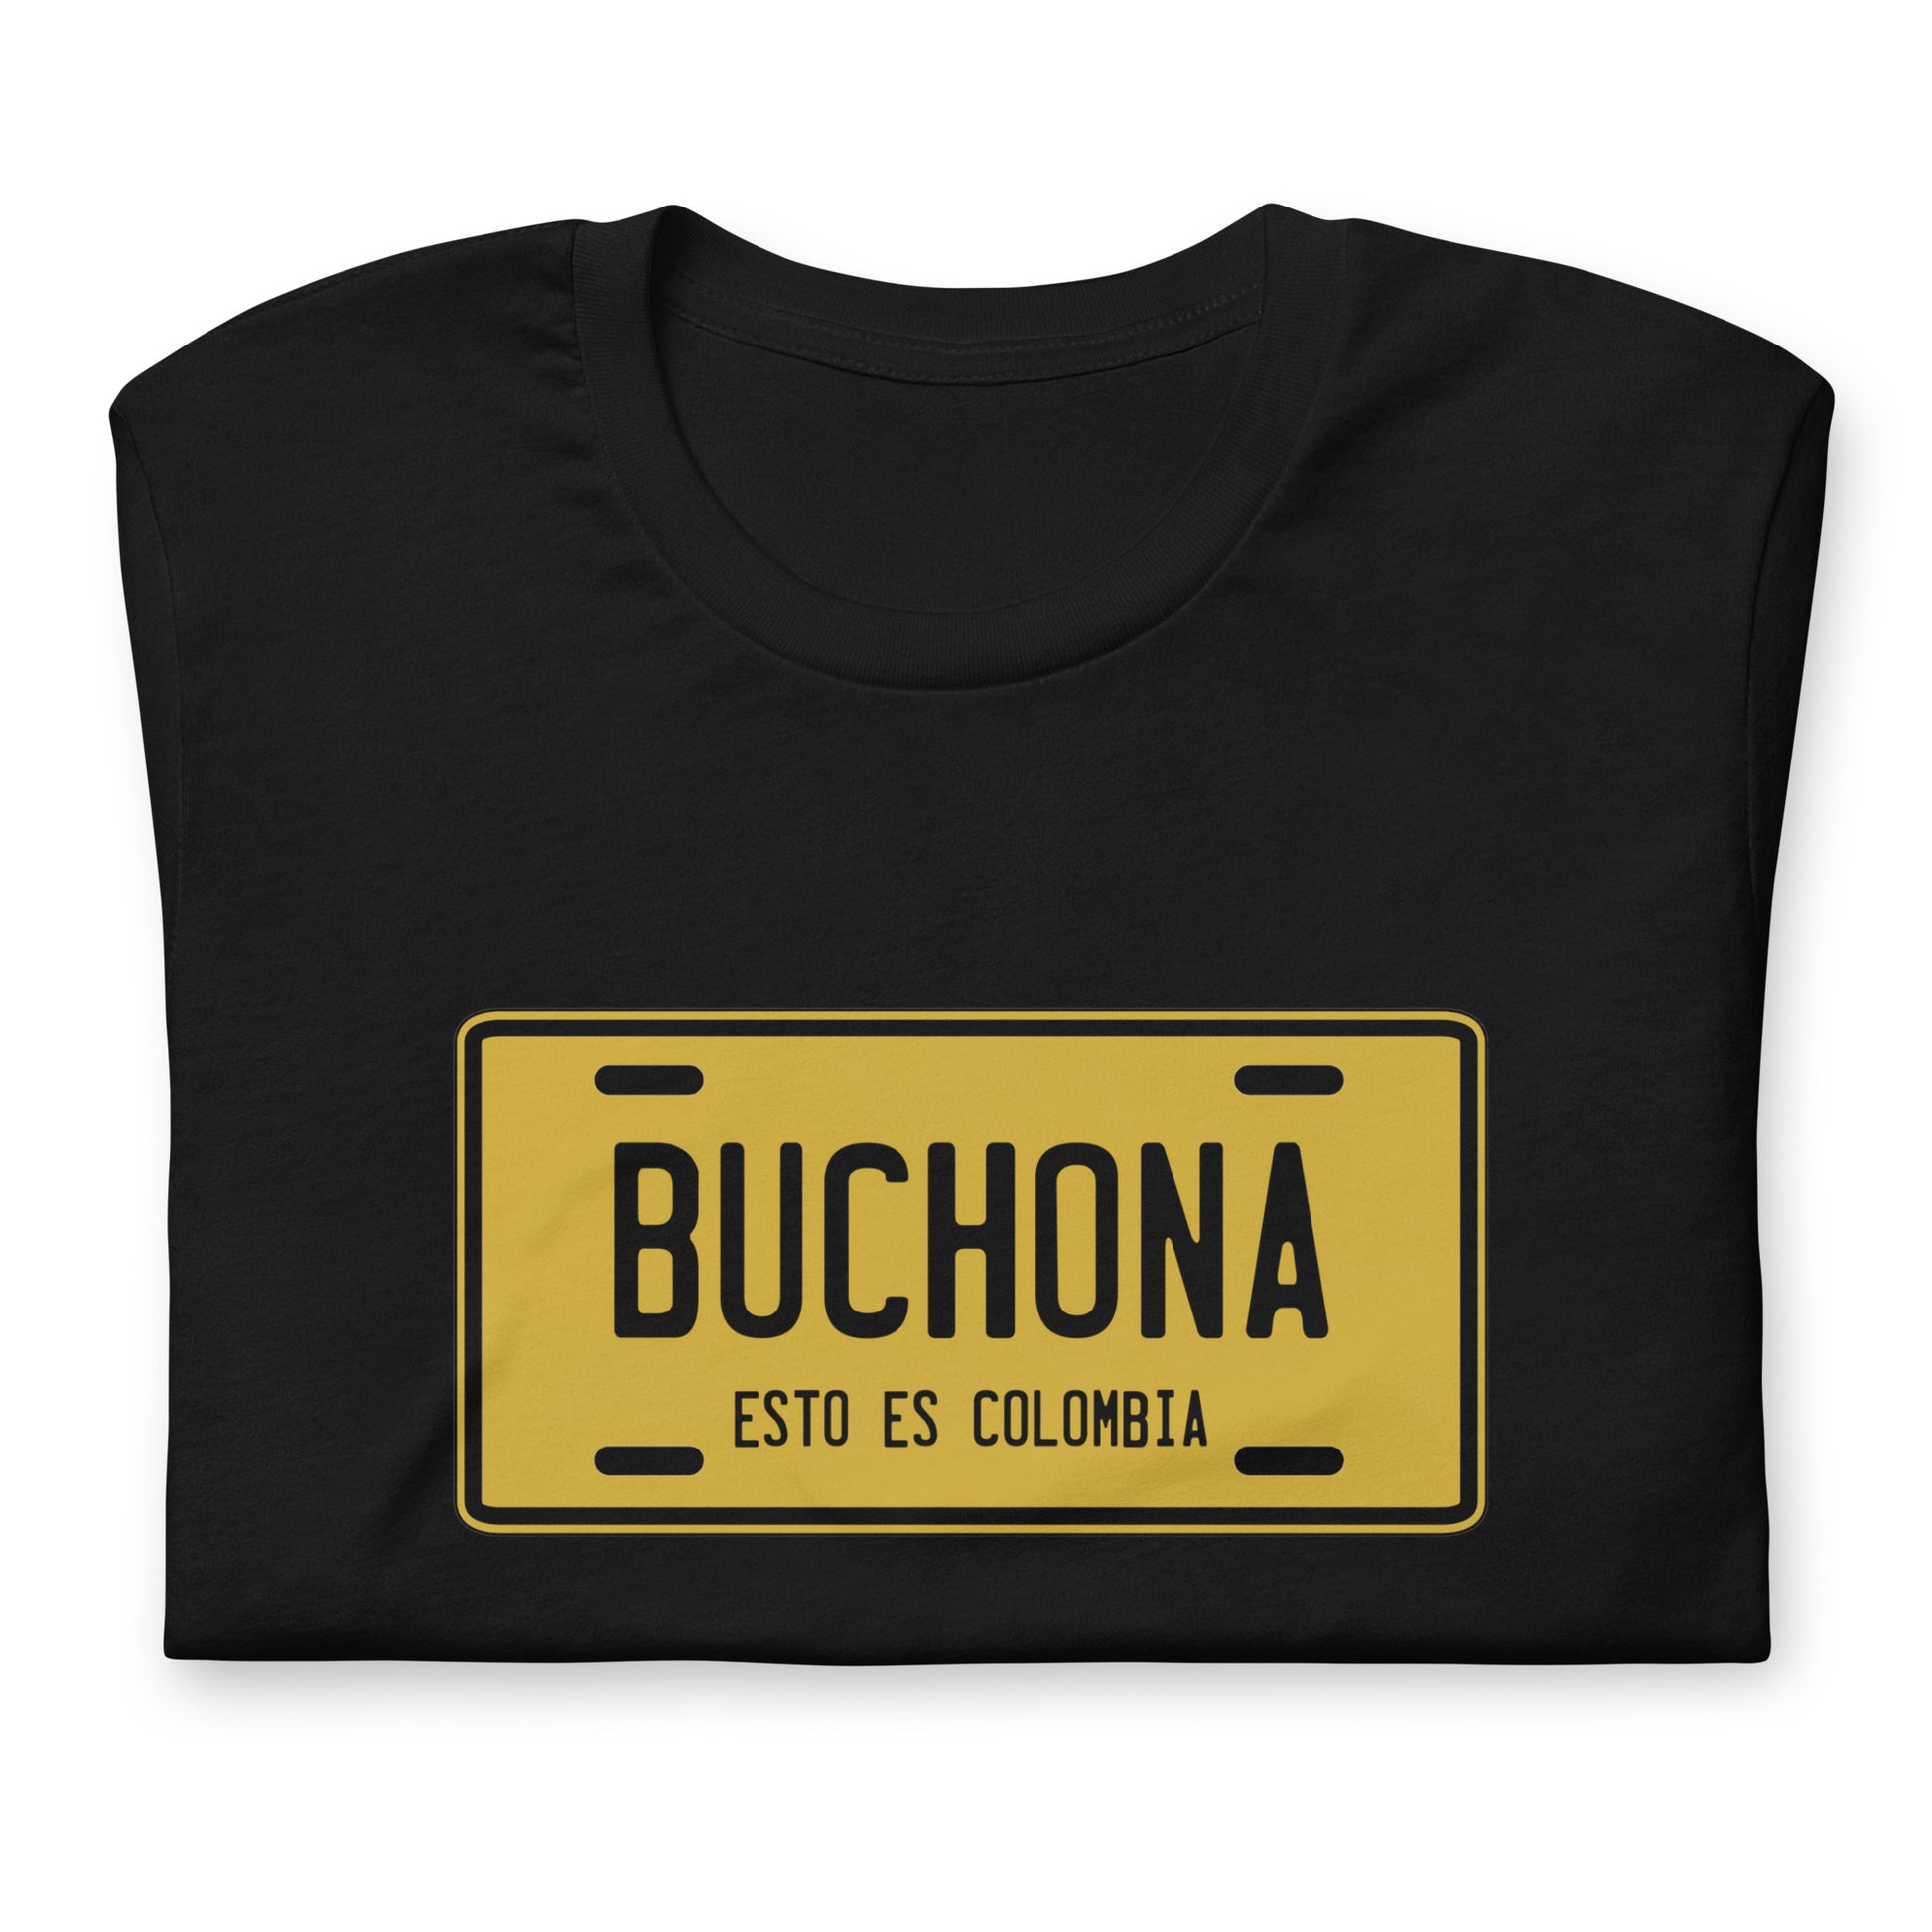 Camiseta Buchona Descubre calidad excepcional y estampados duraderos. Encuentra estilo y orgullo en cada prenda.